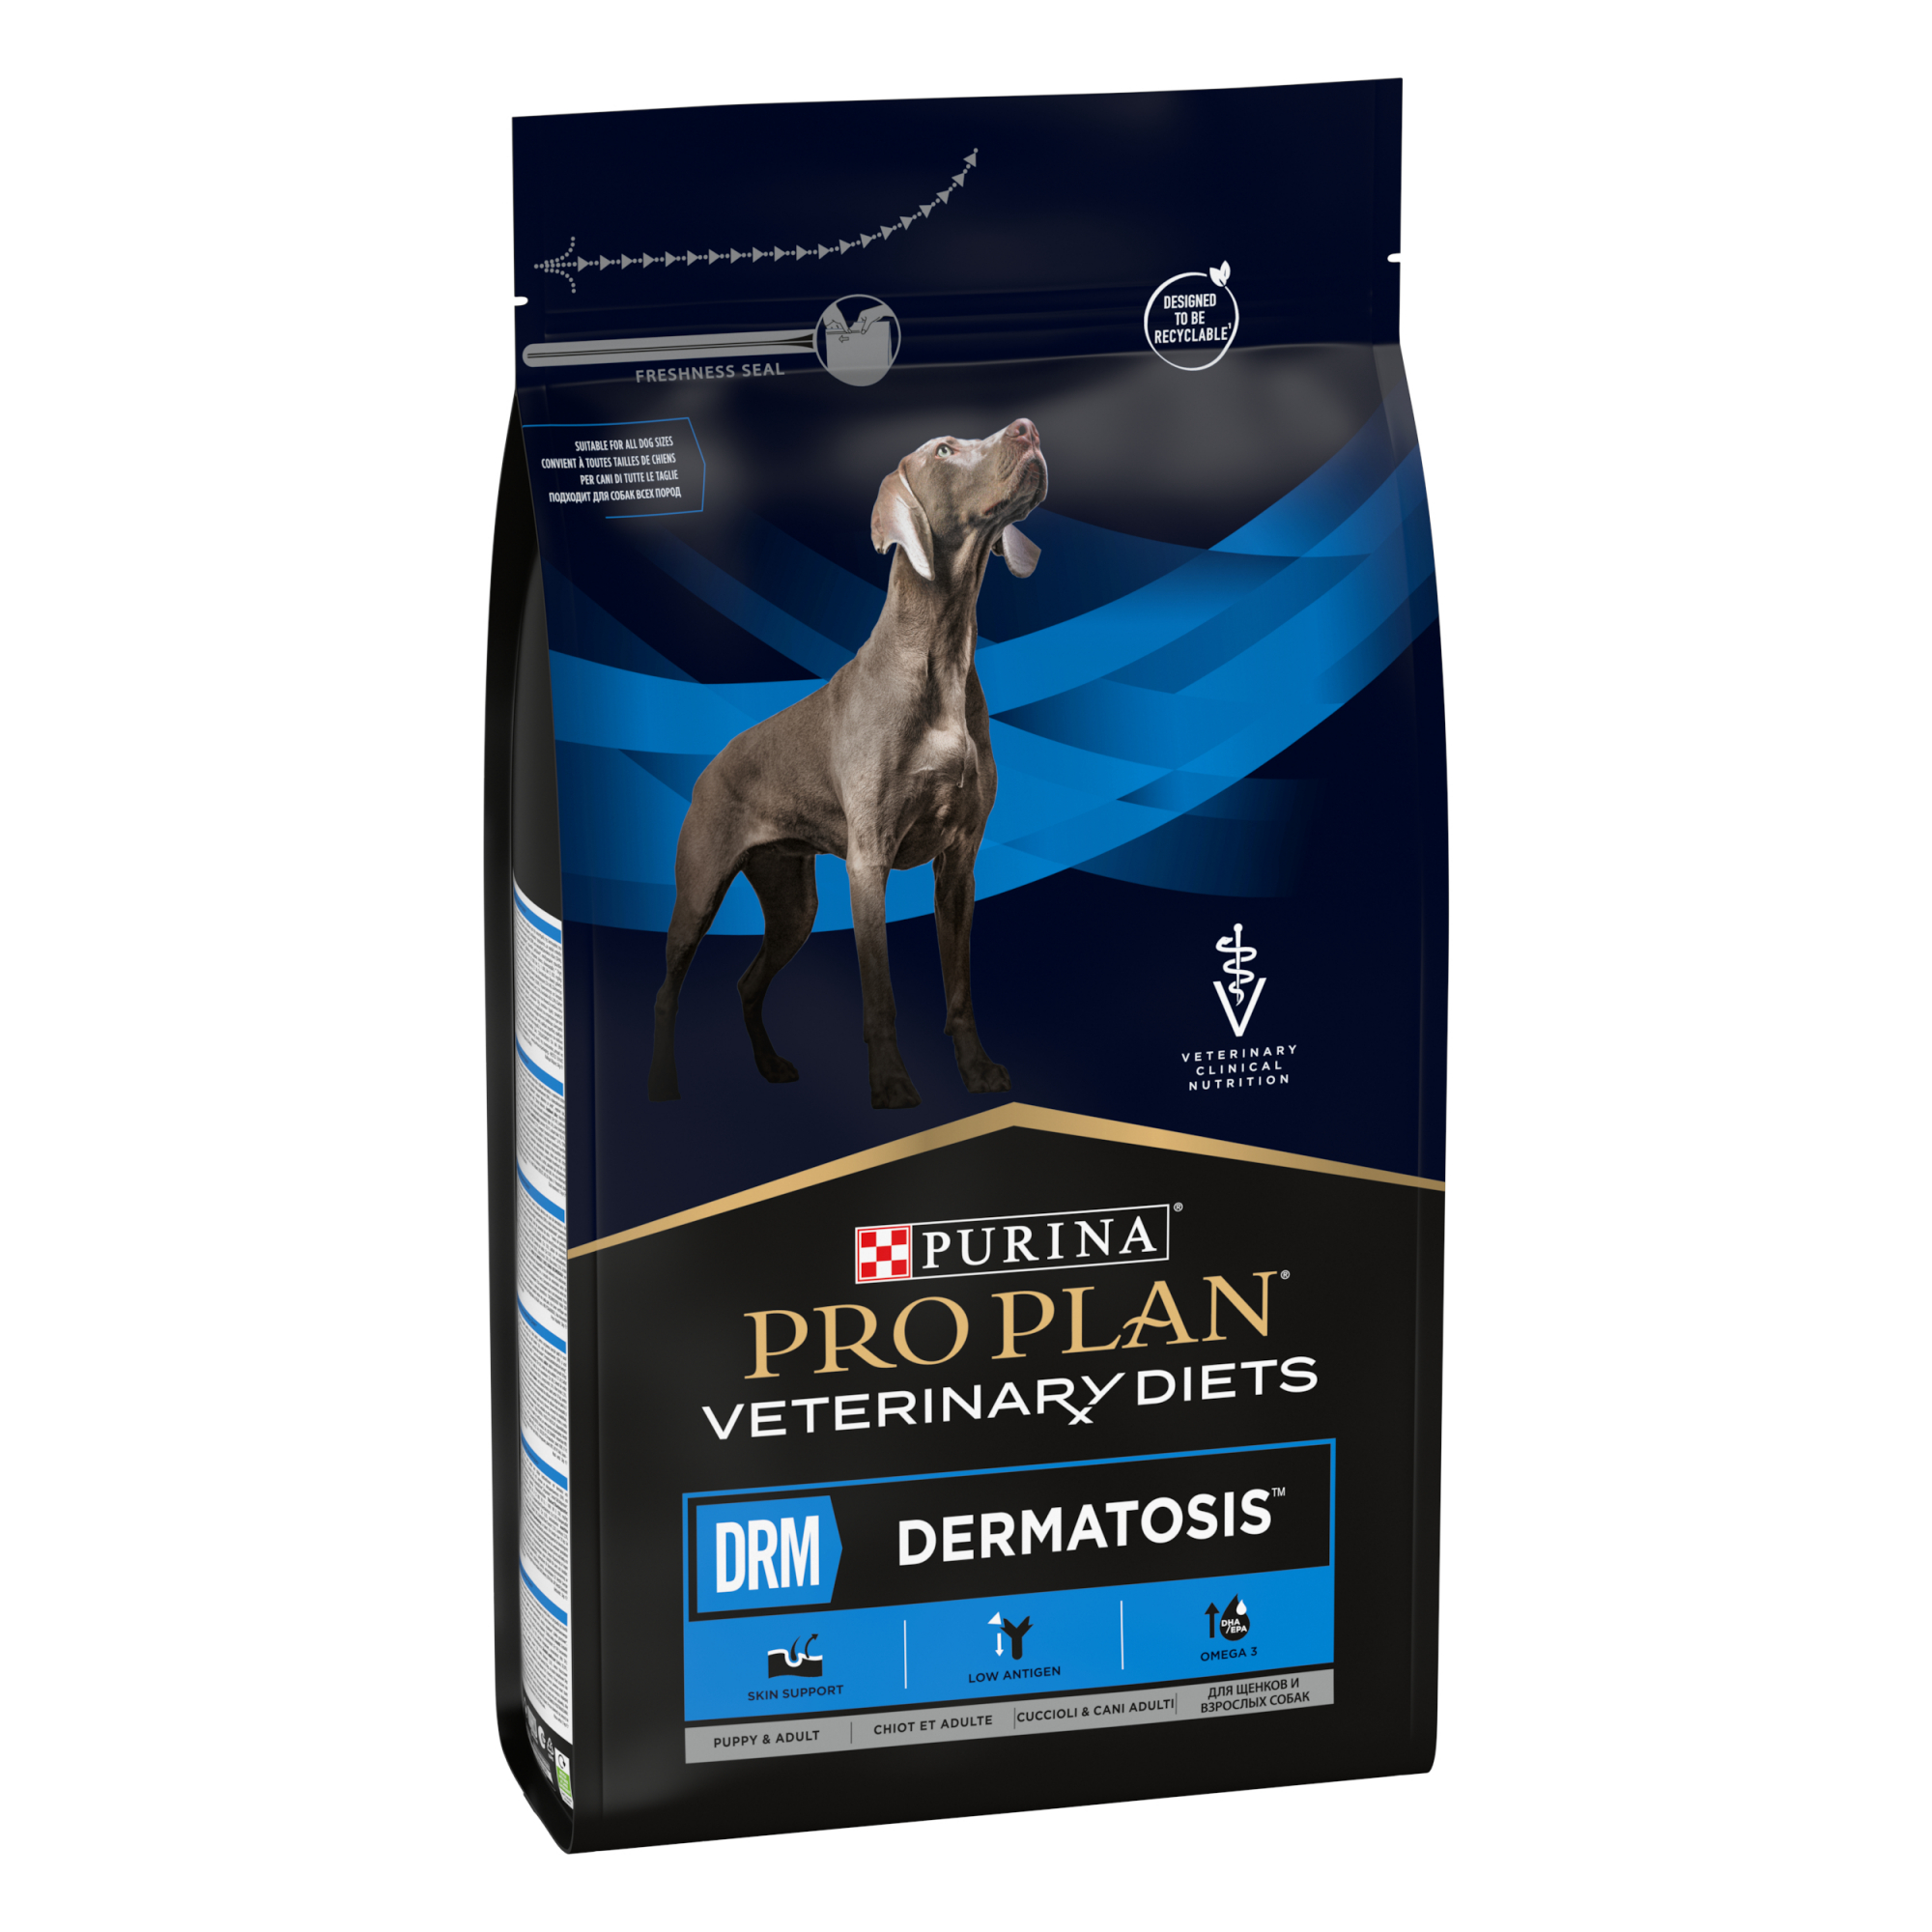 Alimentação veterinária para cão com problemas dermatológicos - Purina Pro Plan Veterinary Diets DRM Dermatosis